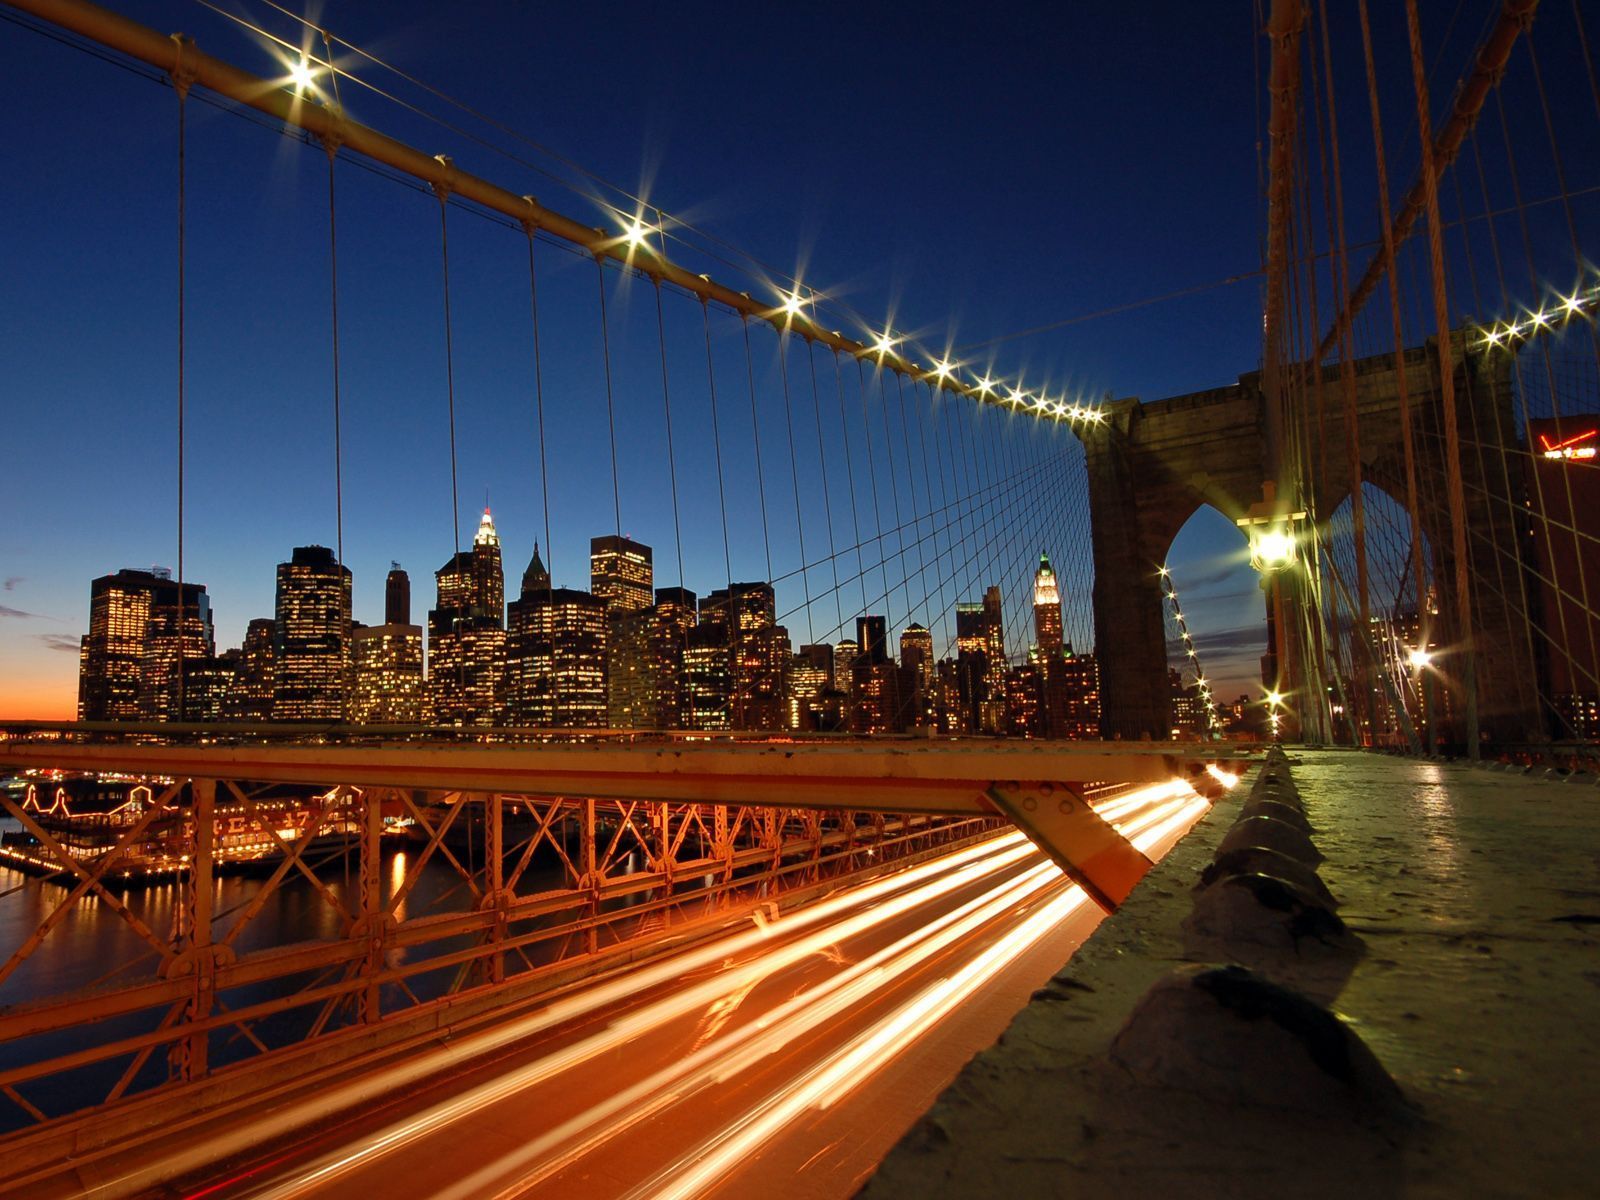 Wallpapers Bridges Night Street lights Cities Image #254630 Download